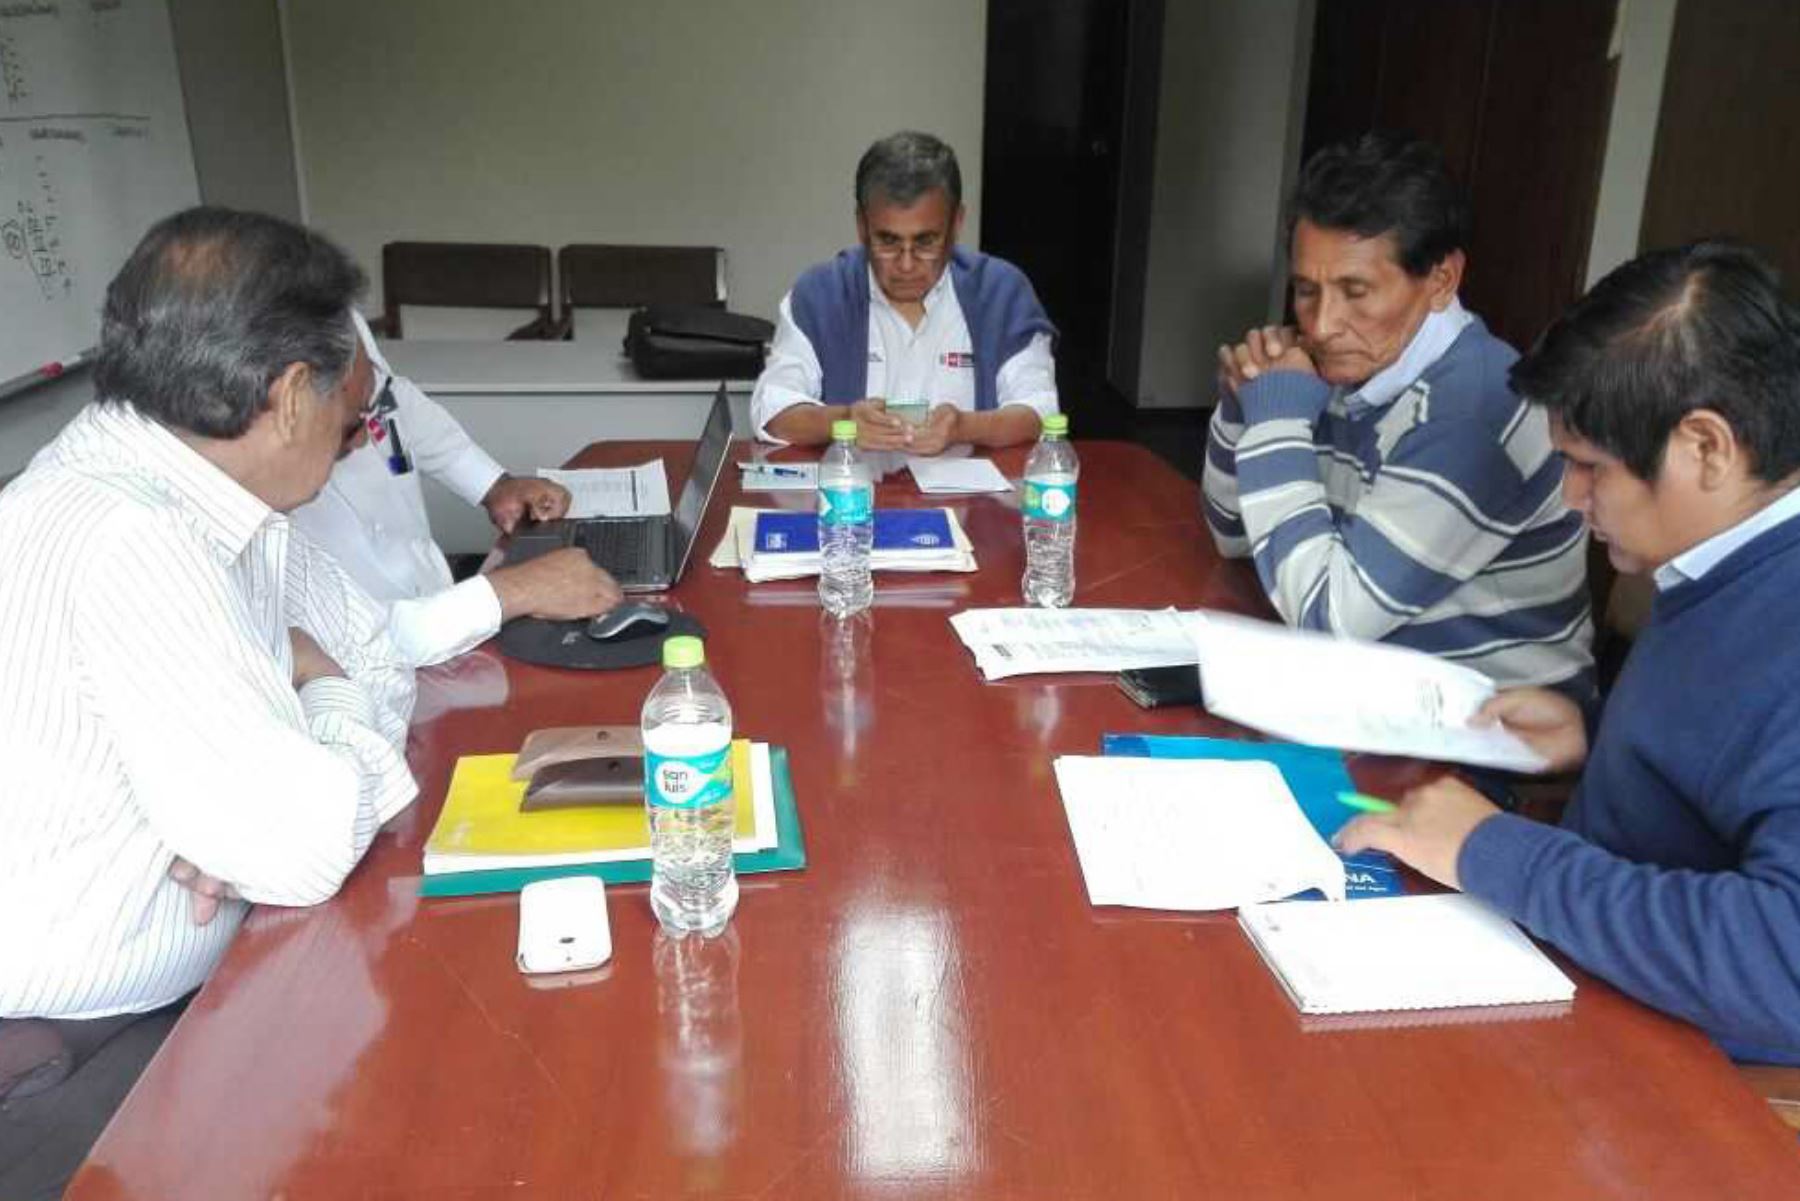 El Ministerio de Agricultura y Riego (Minagri) a través del Programa SubSectorial de Irrigaciones (PSI) desarrolló una evaluación integral del nuevo Programa de Reconstrucción con Cambios en la región La Libertad en reunión sostenida con los presidentes de las juntas de usuarios de la jurisdicción.